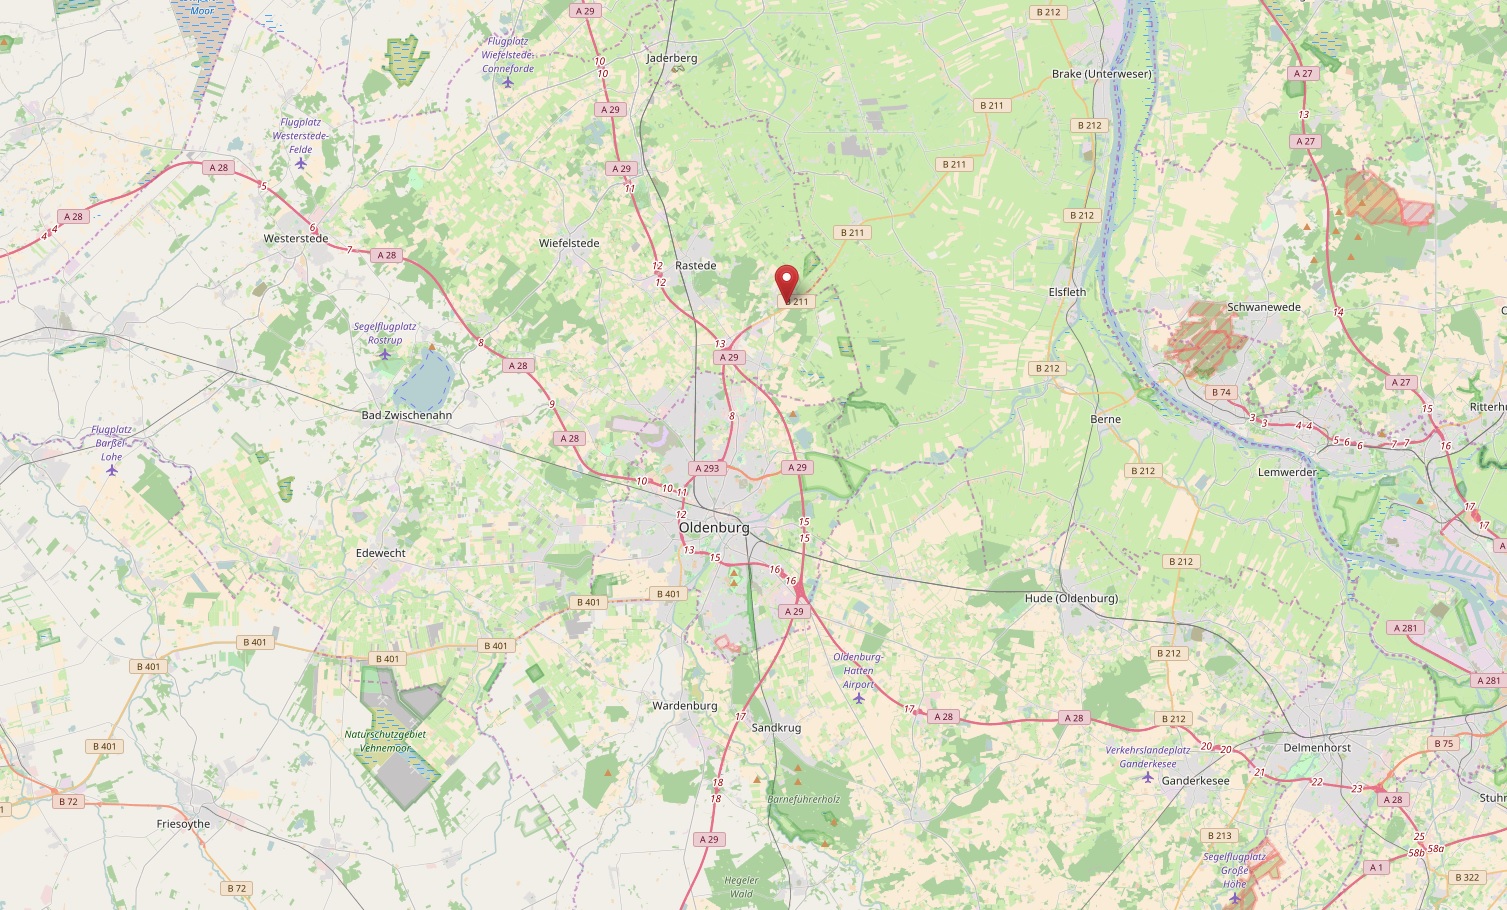 Kartenausschnitt Oldenburg mit NABK Loy verzeichnet